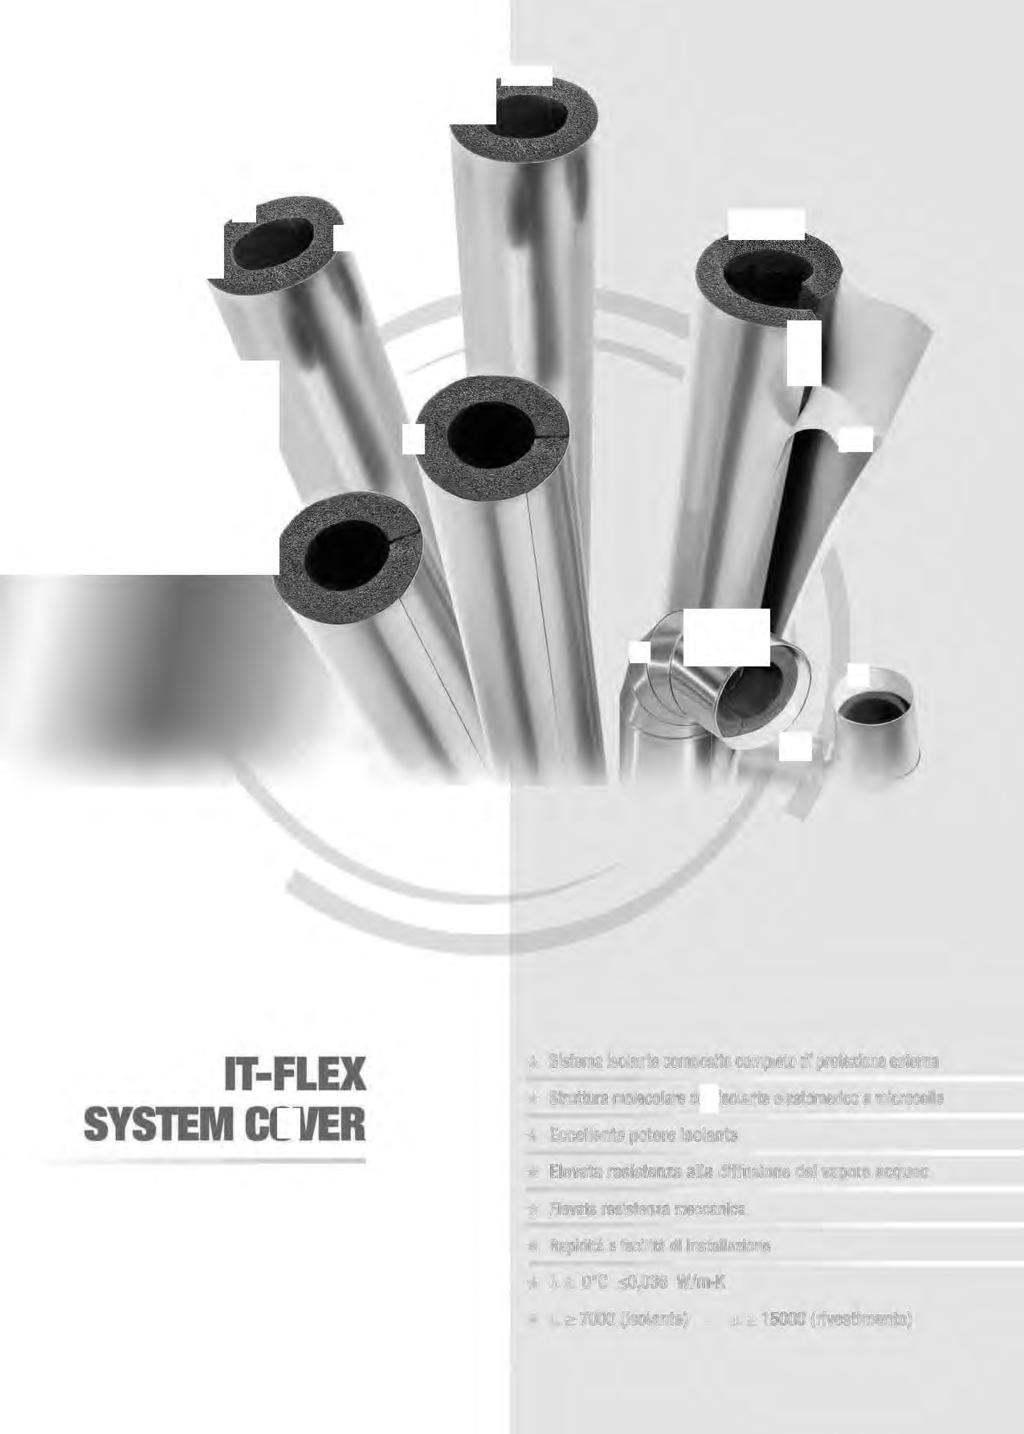 ITFLEX SYSTEM COVER * Sistema isolante composito completo di protezione esterna * Struttura